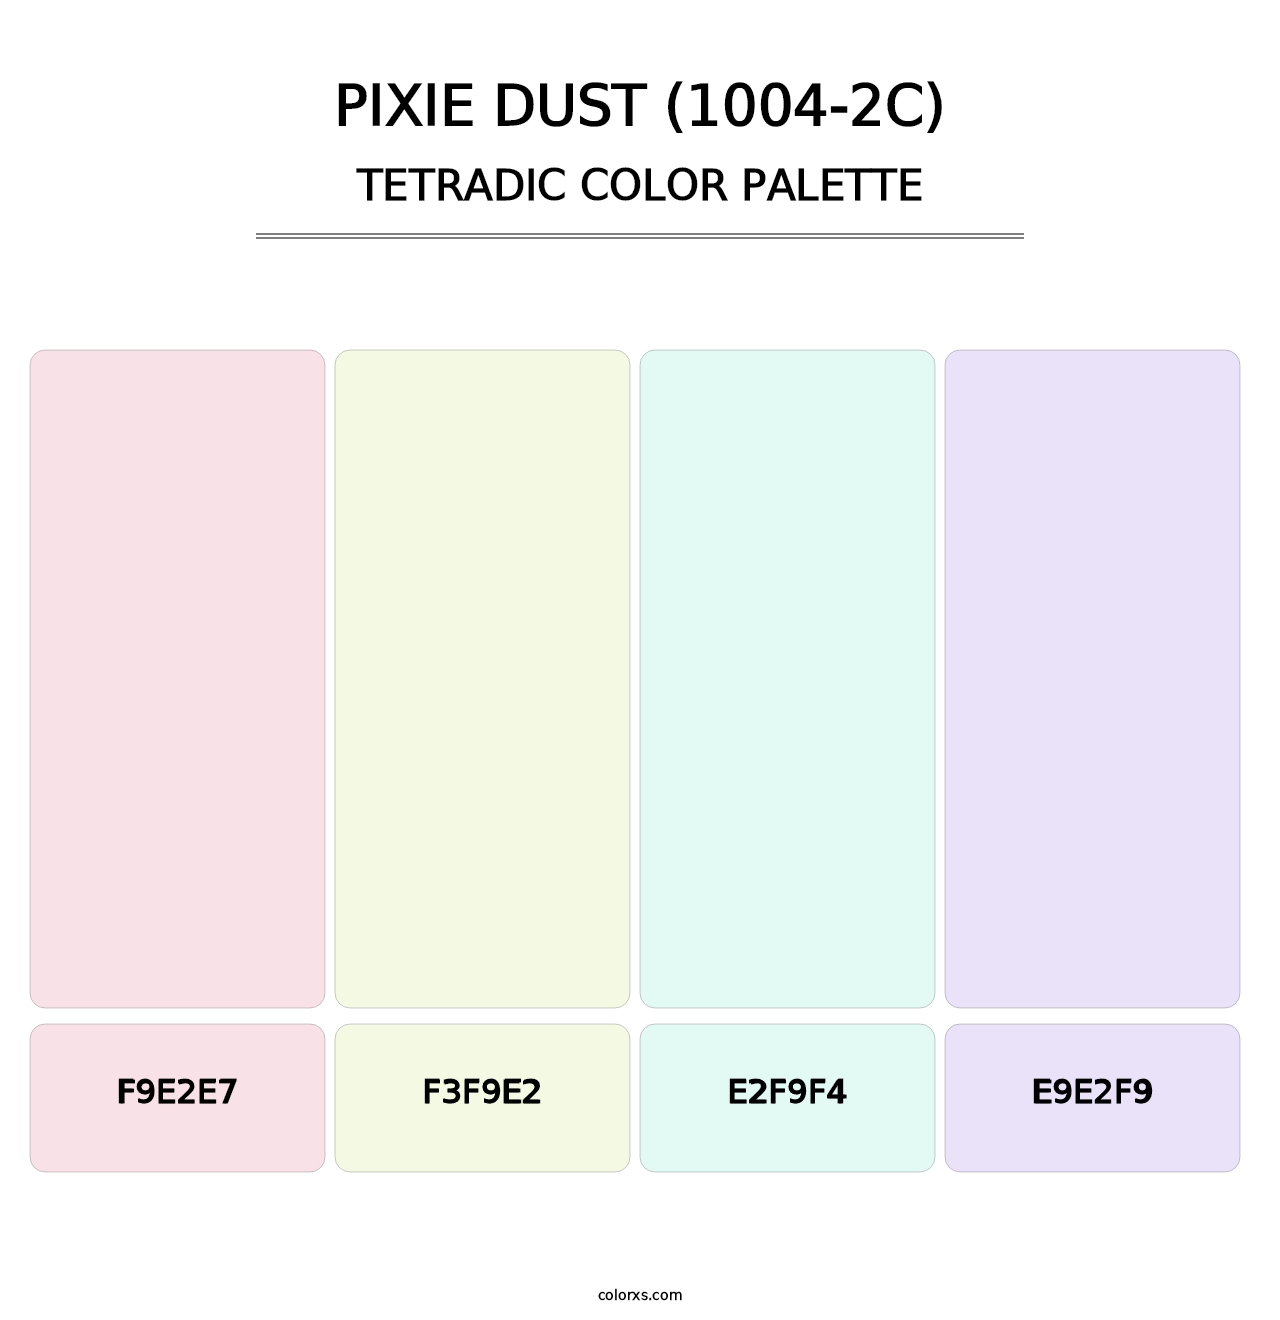 Pixie Dust (1004-2C) - Tetradic Color Palette